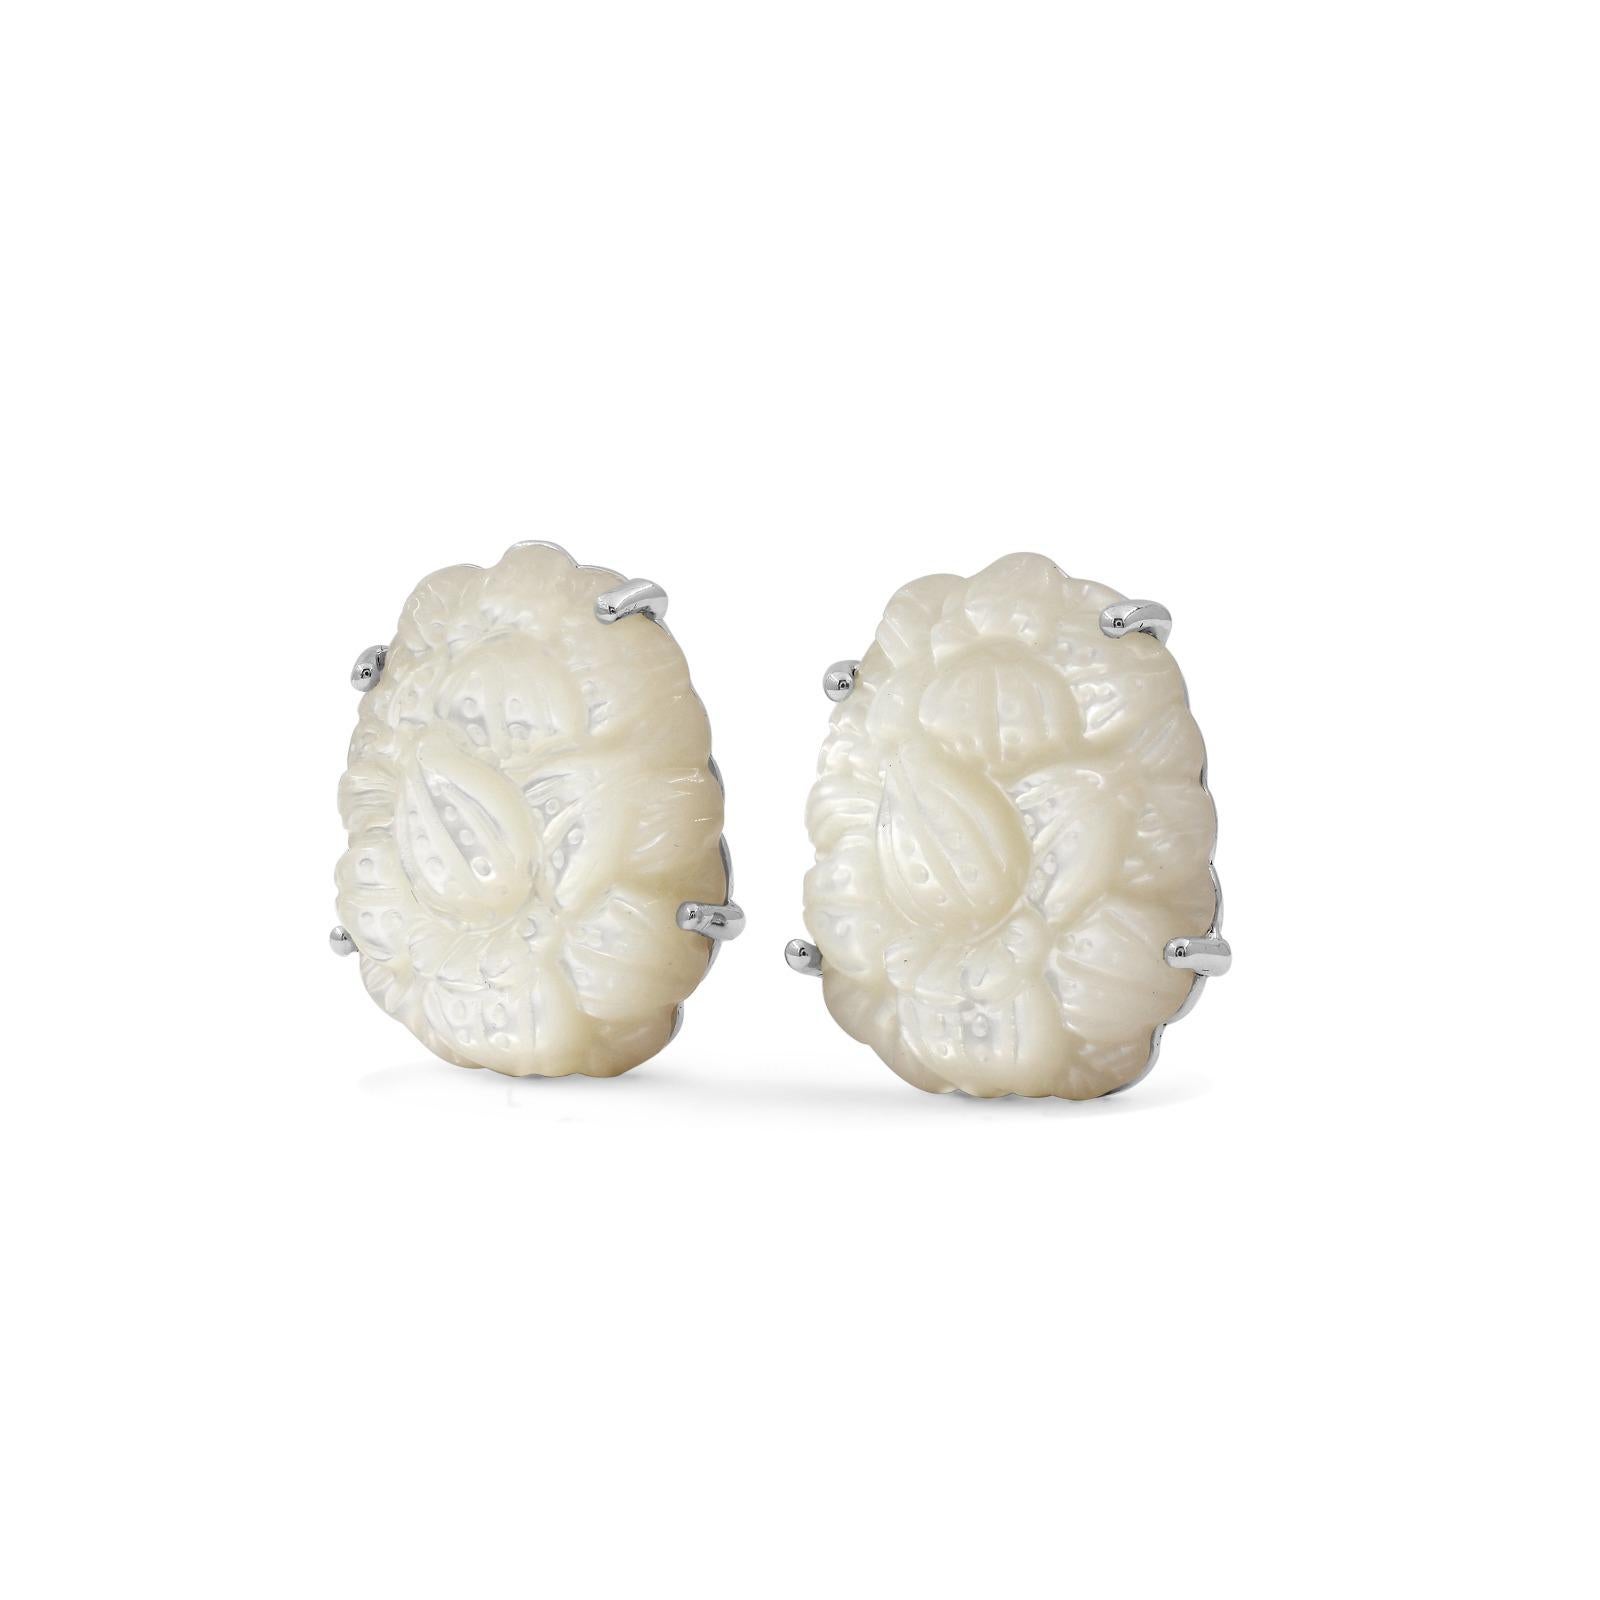 Treten Sie ein in das bezaubernde Reich von Stevens Schmuck, wo Kunstfertigkeit und Handwerkskunst in den Carventurous Hand Carved Mother Of Pearl Earrings in Sculpted Sterling Silver zusammenfließen. Diese Ohrringe sind ein Beweis für die Hingabe